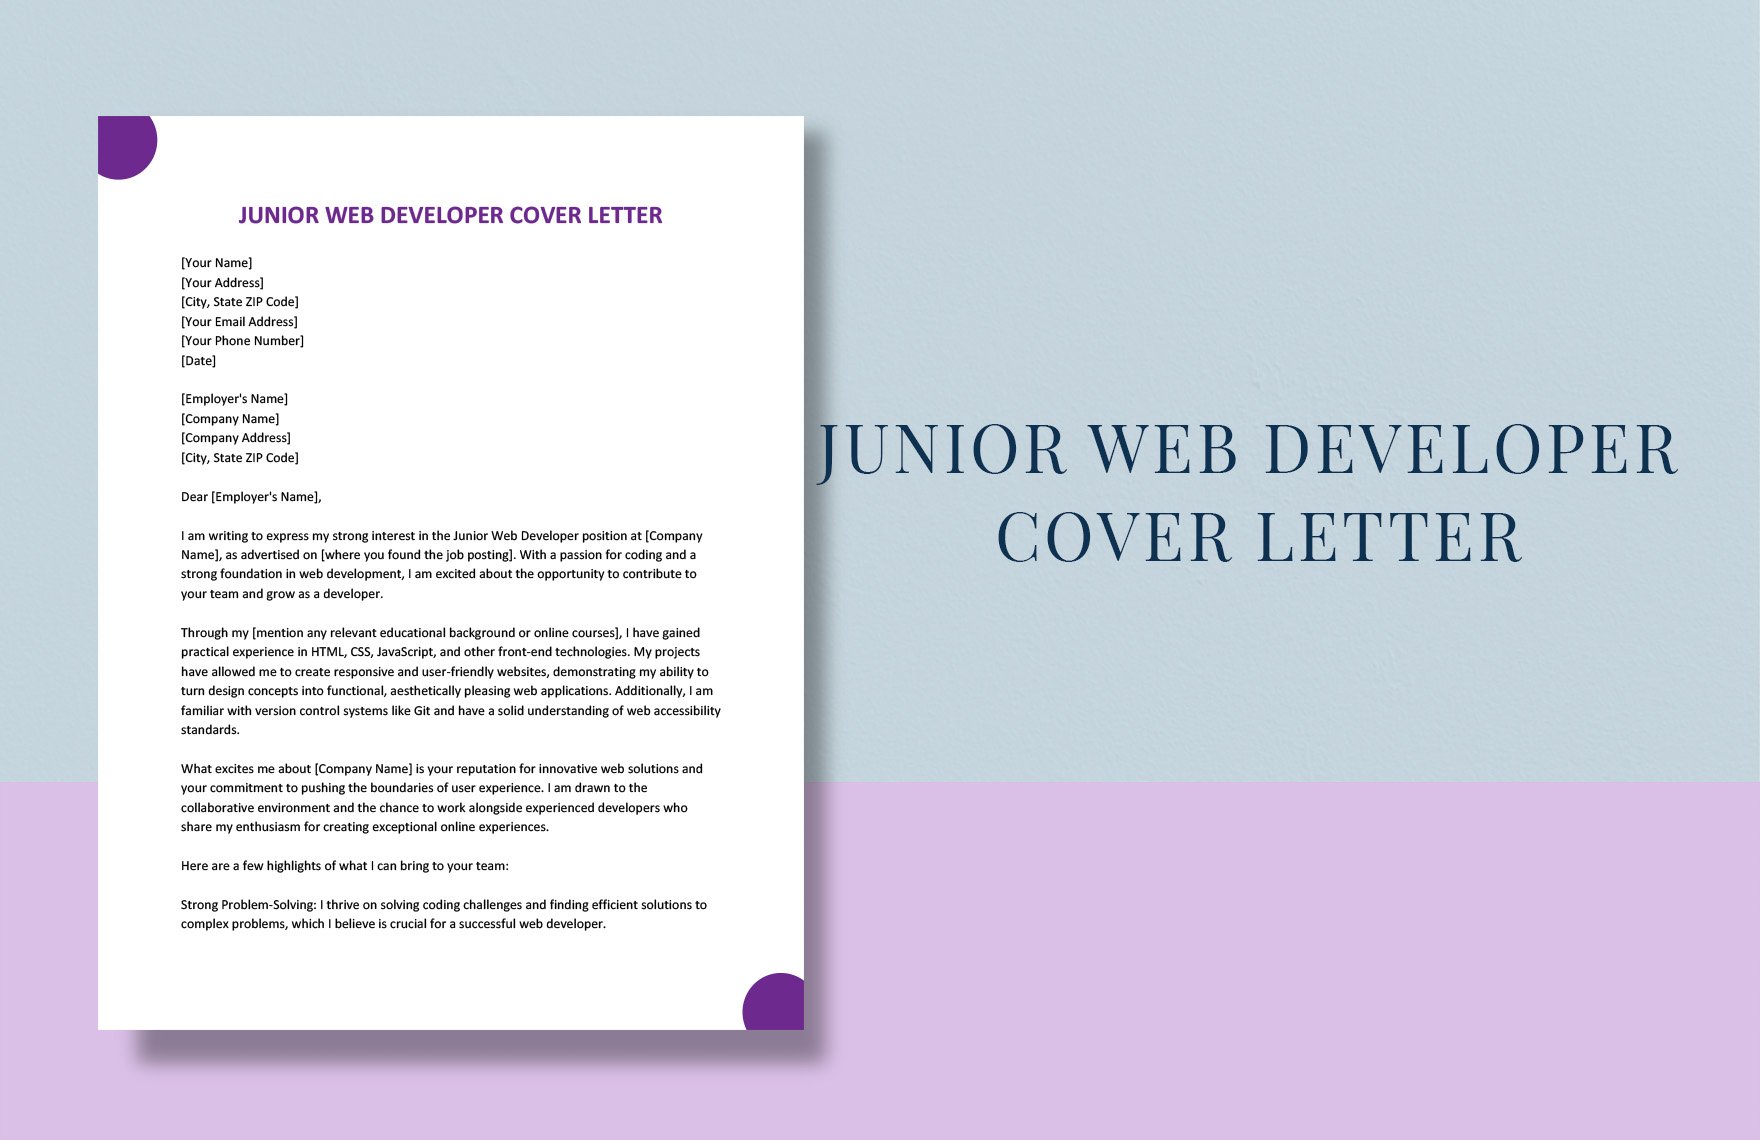 Junior Web Developer Cover Letter in Word, Google Docs